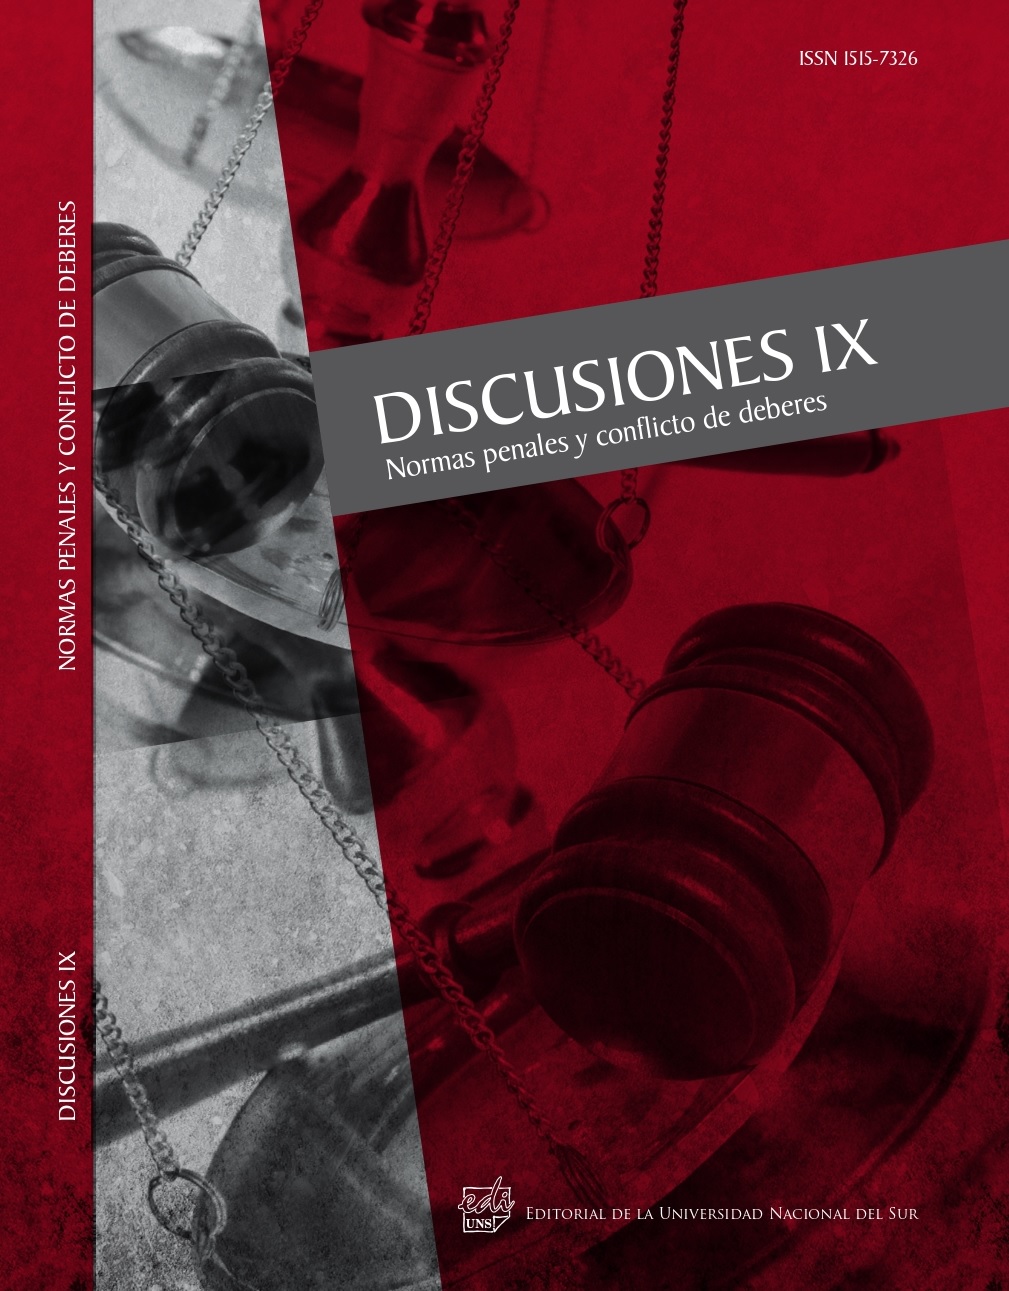 					Ver Vol. 9 (2010): Normas penales y conflicto de deberes
				